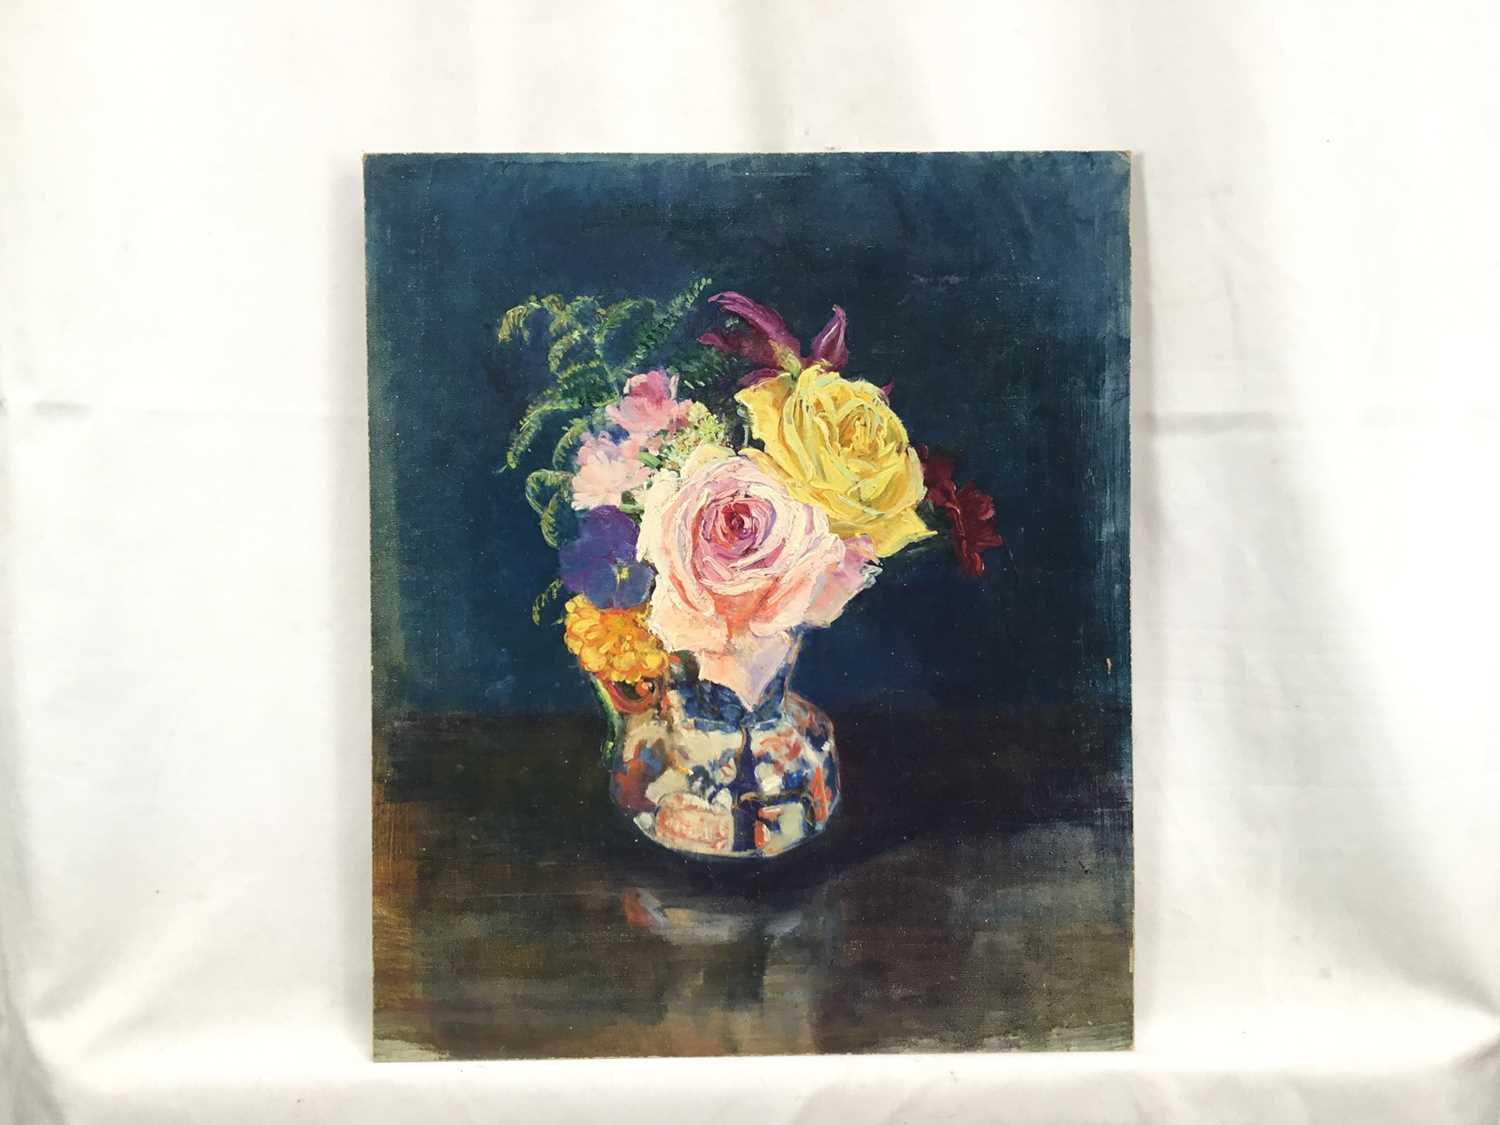 Amy Watt (1900-1956) oil on board - Vase of flowers, 32cm x 27.5cm, unframed - Image 3 of 3